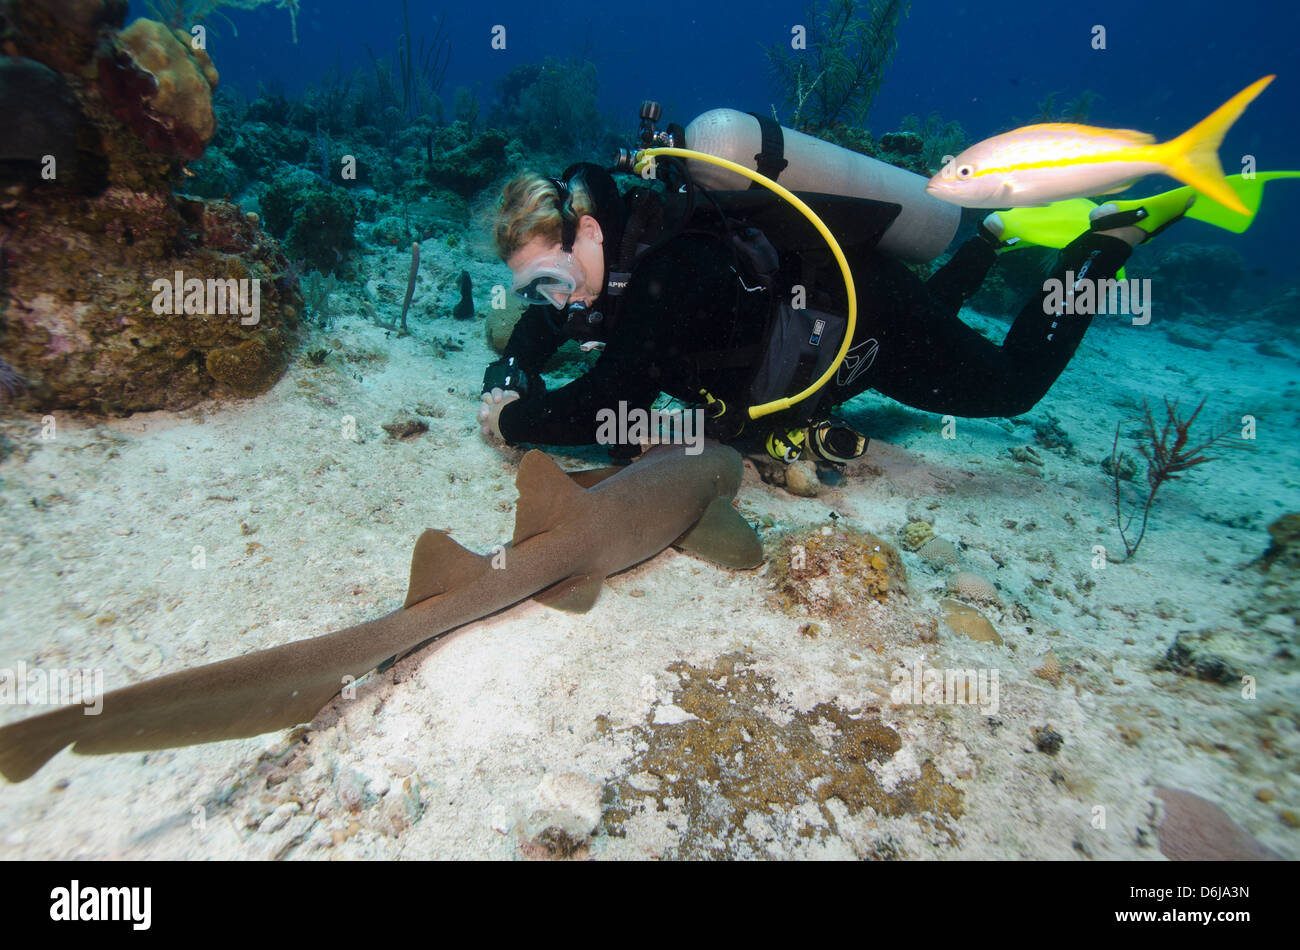 Requin nourrice près de repos un plongeur dans les îles Turques et Caïques, Antilles, Caraïbes, Amérique Centrale Banque D'Images